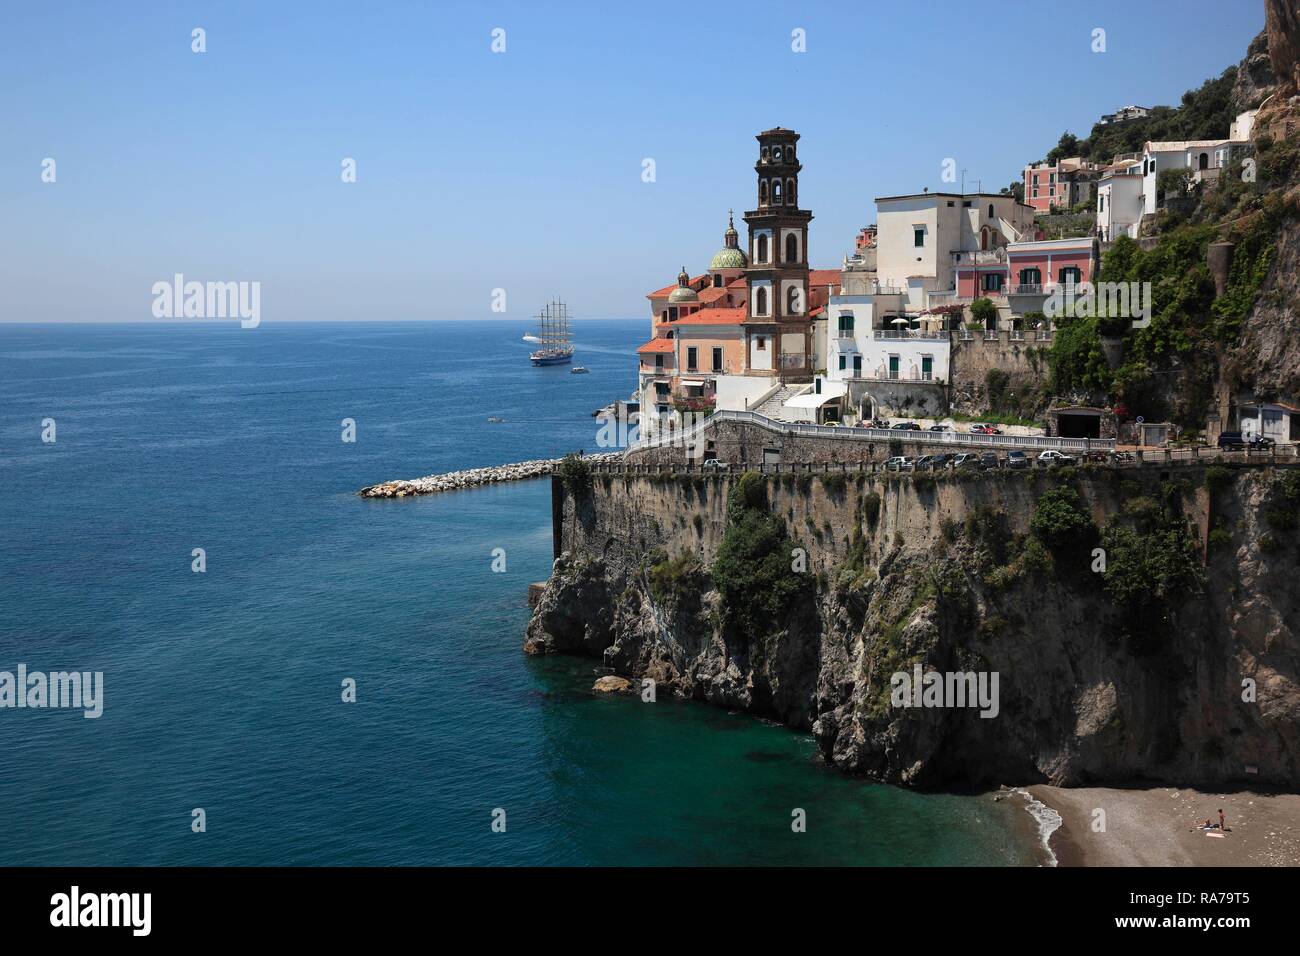 Atrani on the Amalfi Coast, Campania, Italy, Europe Stock Photo